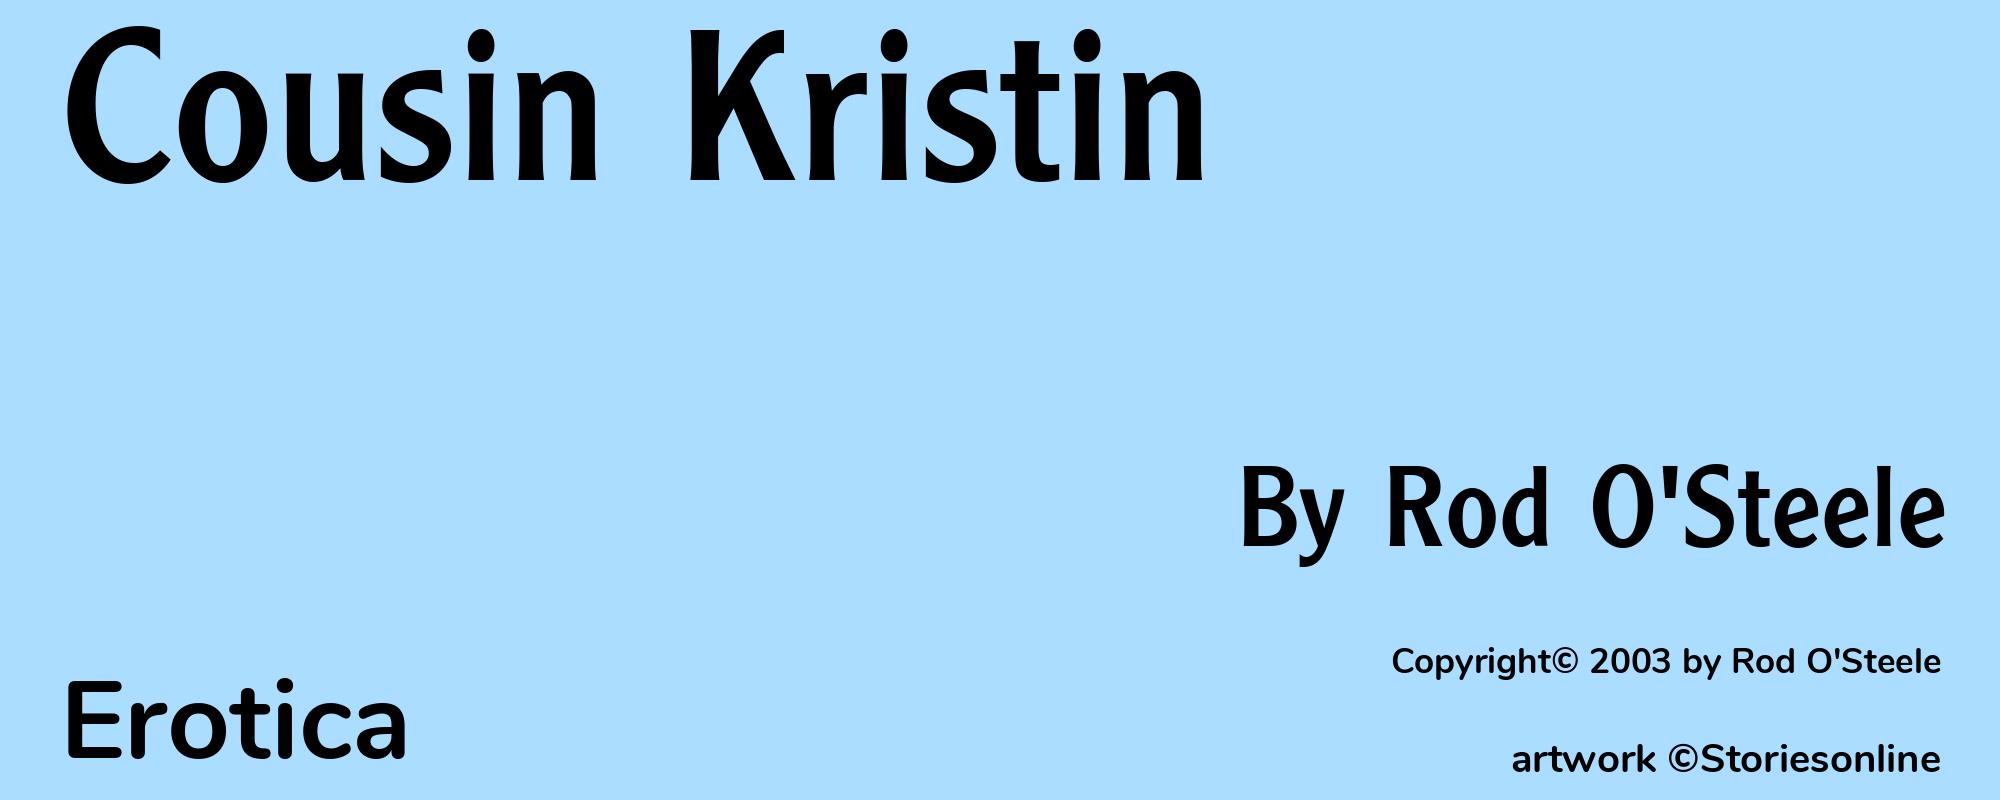 Cousin Kristin - Cover